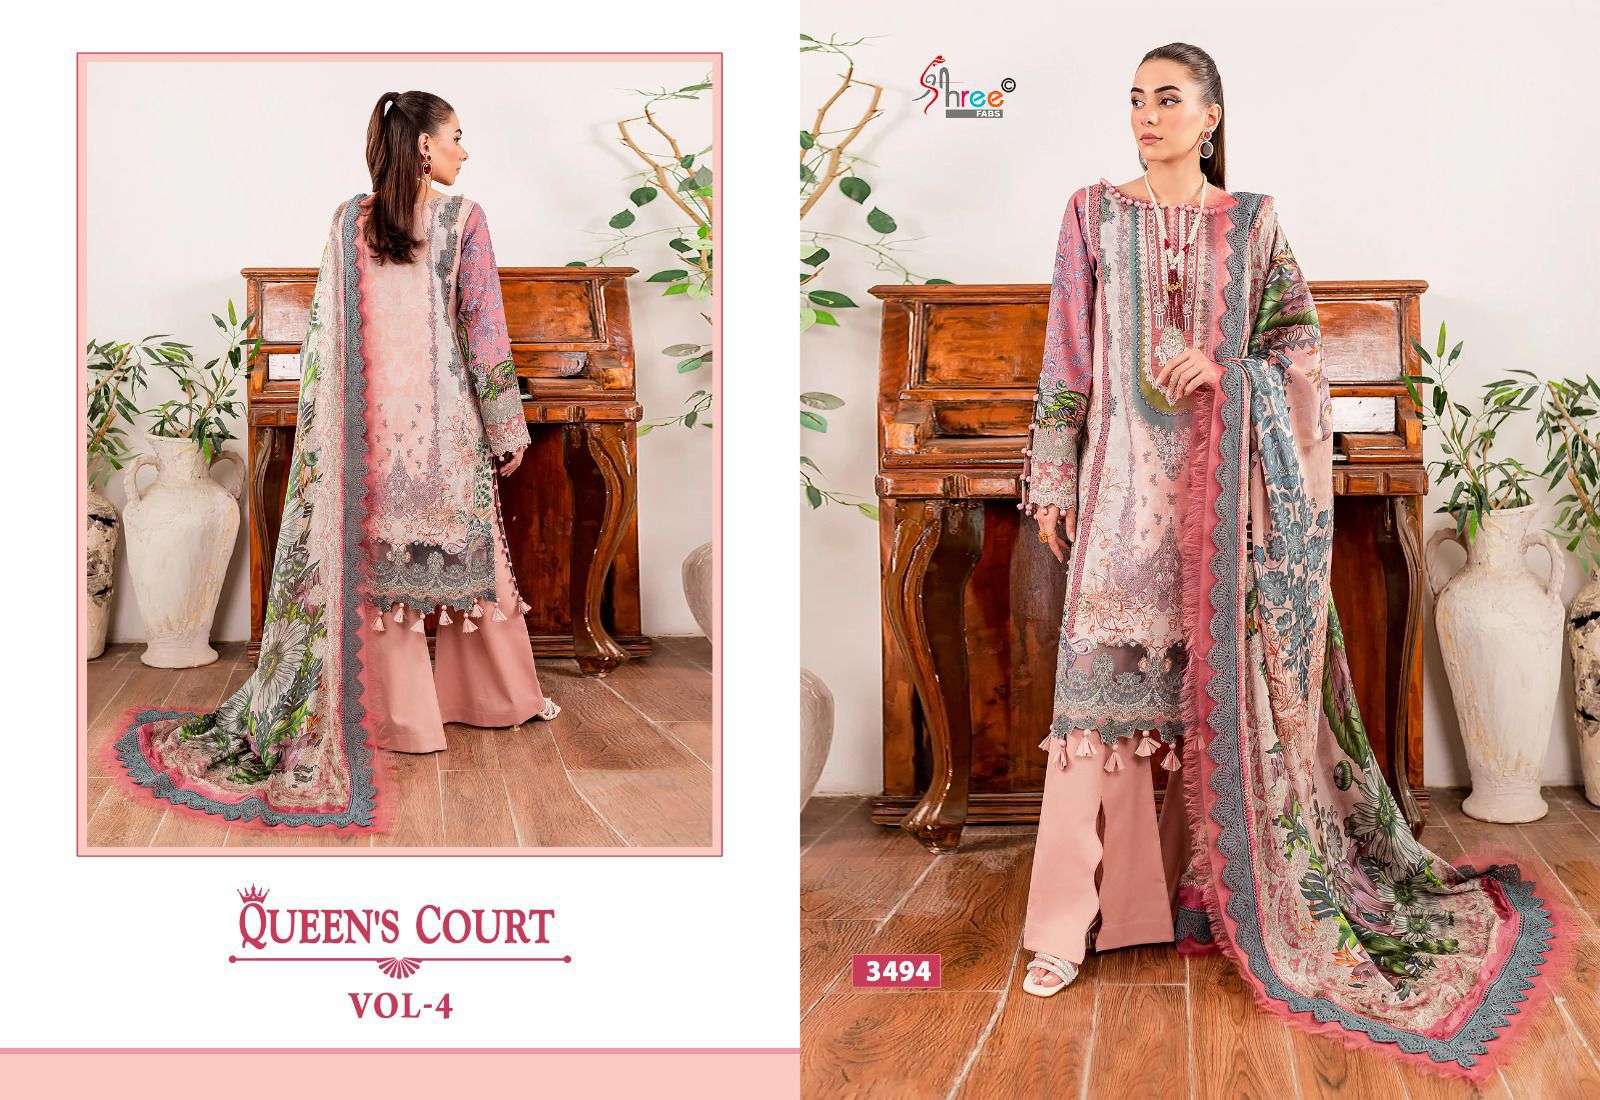 Shree Queens Court Vol 4 Cotton Dupatta Pakistani Suits Wholesale catalog